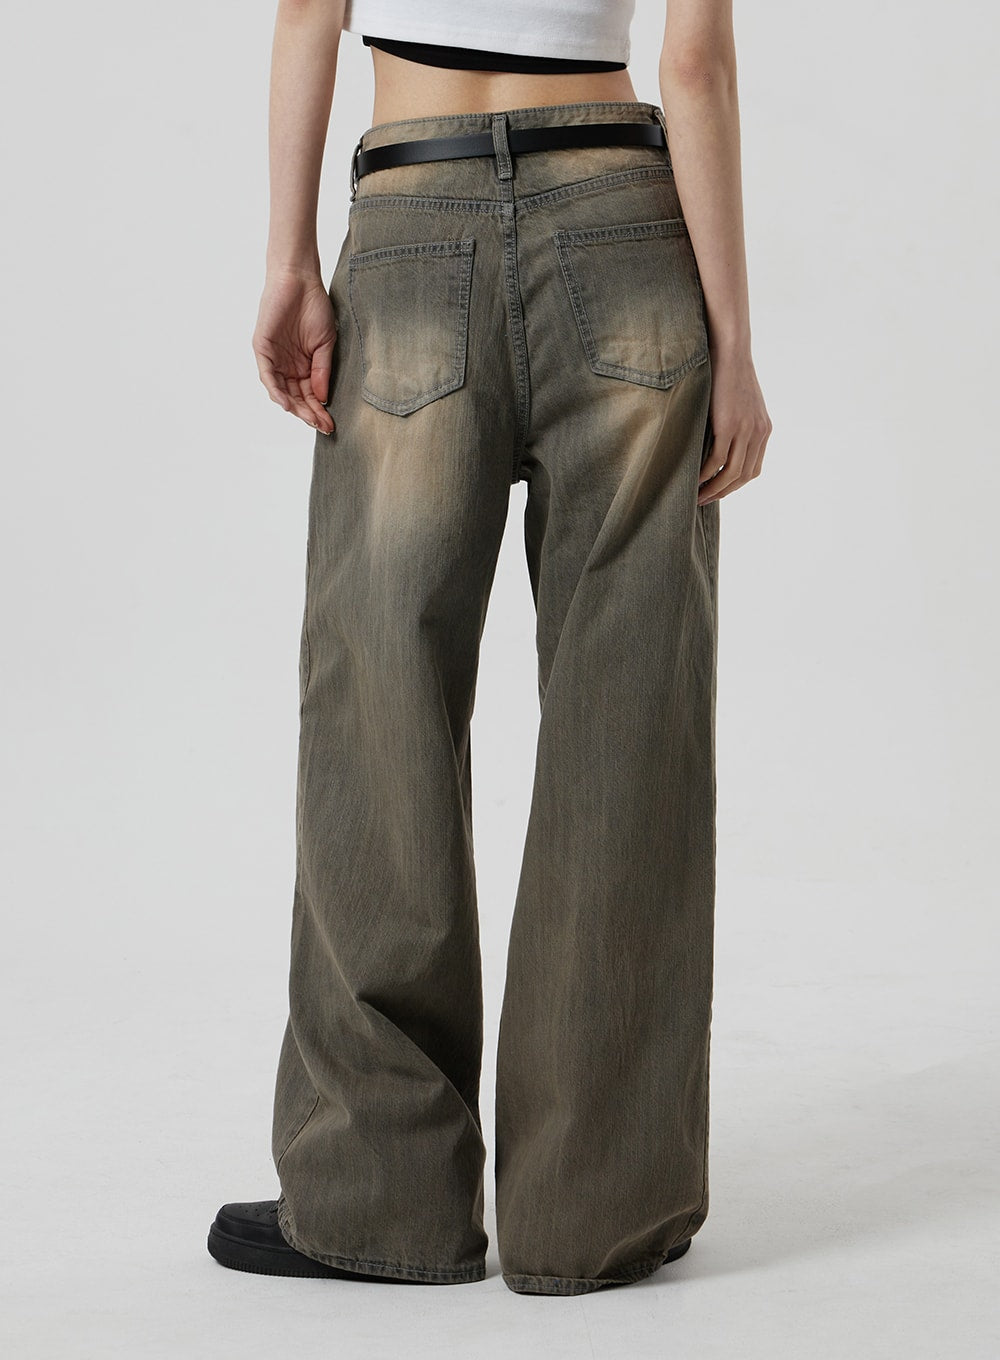 Vintage Wash Baggy Wide-Leg Jeans Men's Cargo Pants Korean Pants